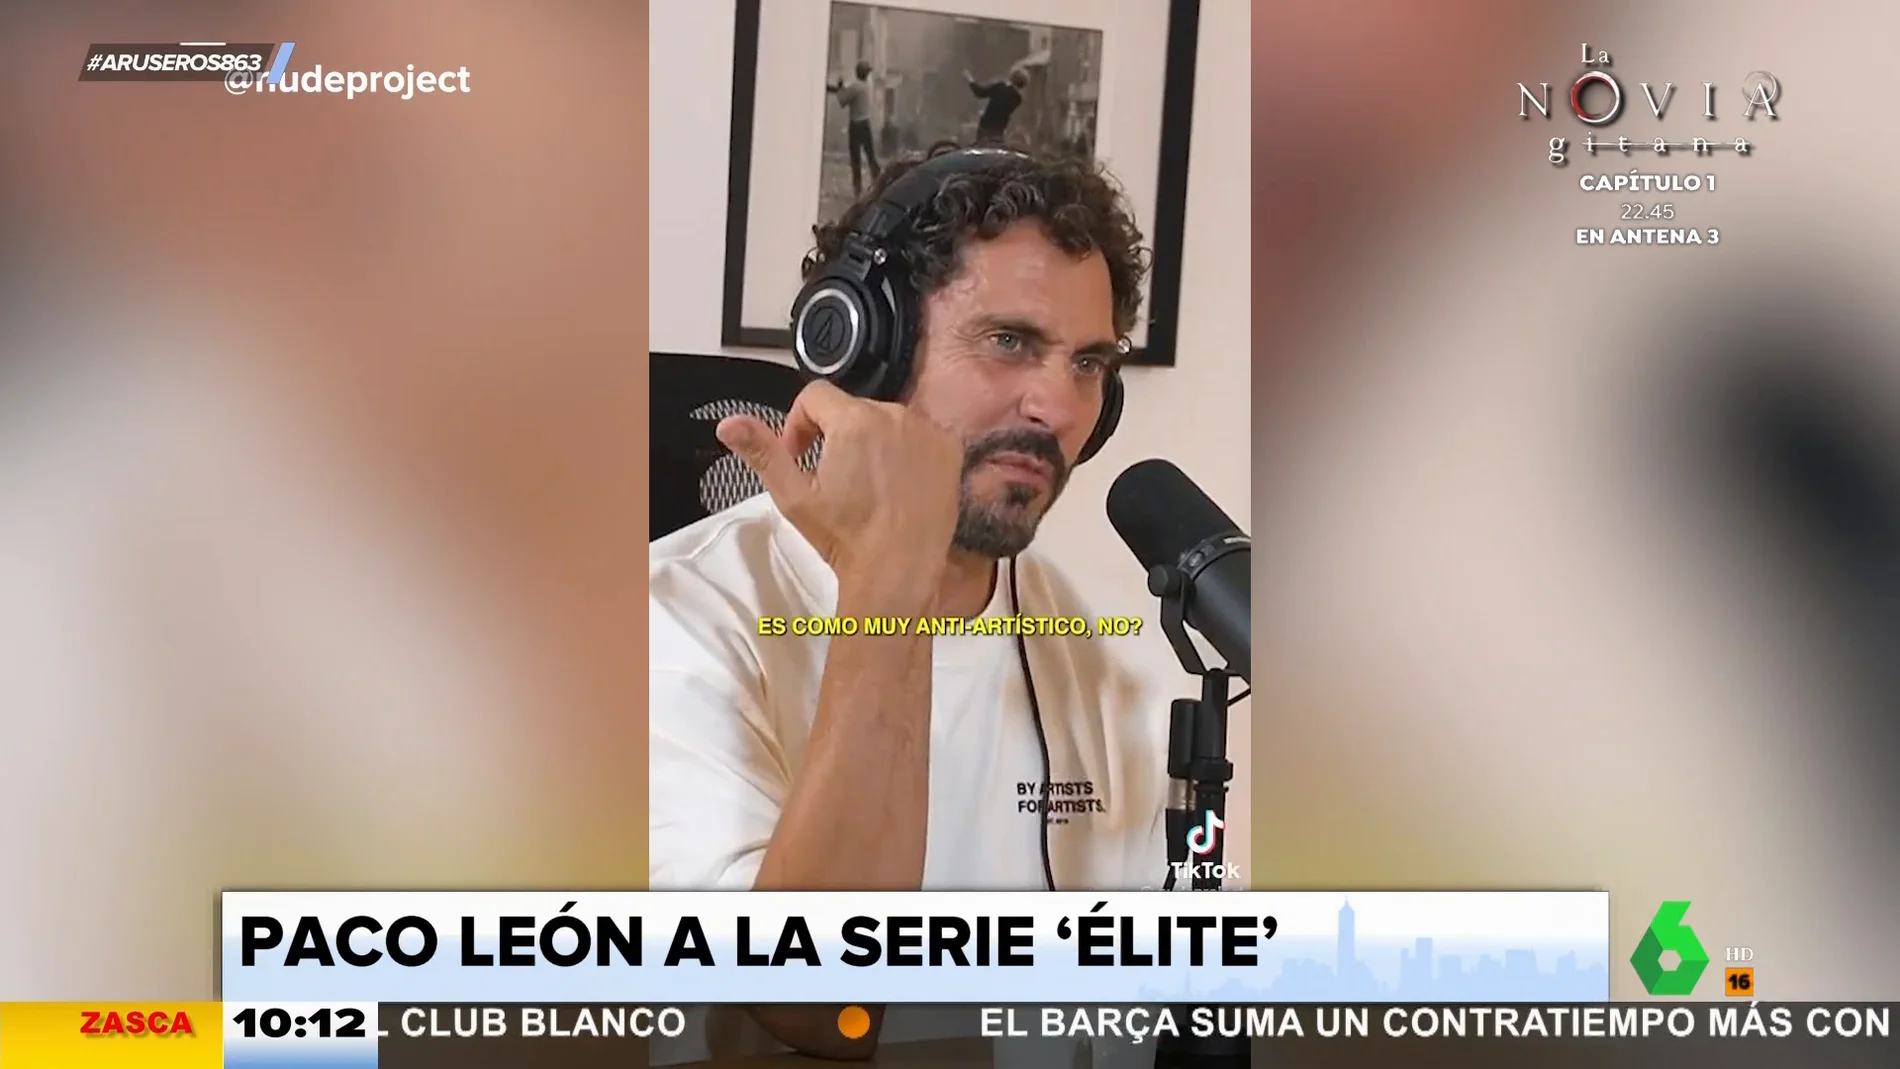 Paco León confiesa su opinión sobre 'Élite': "Es una mierda"